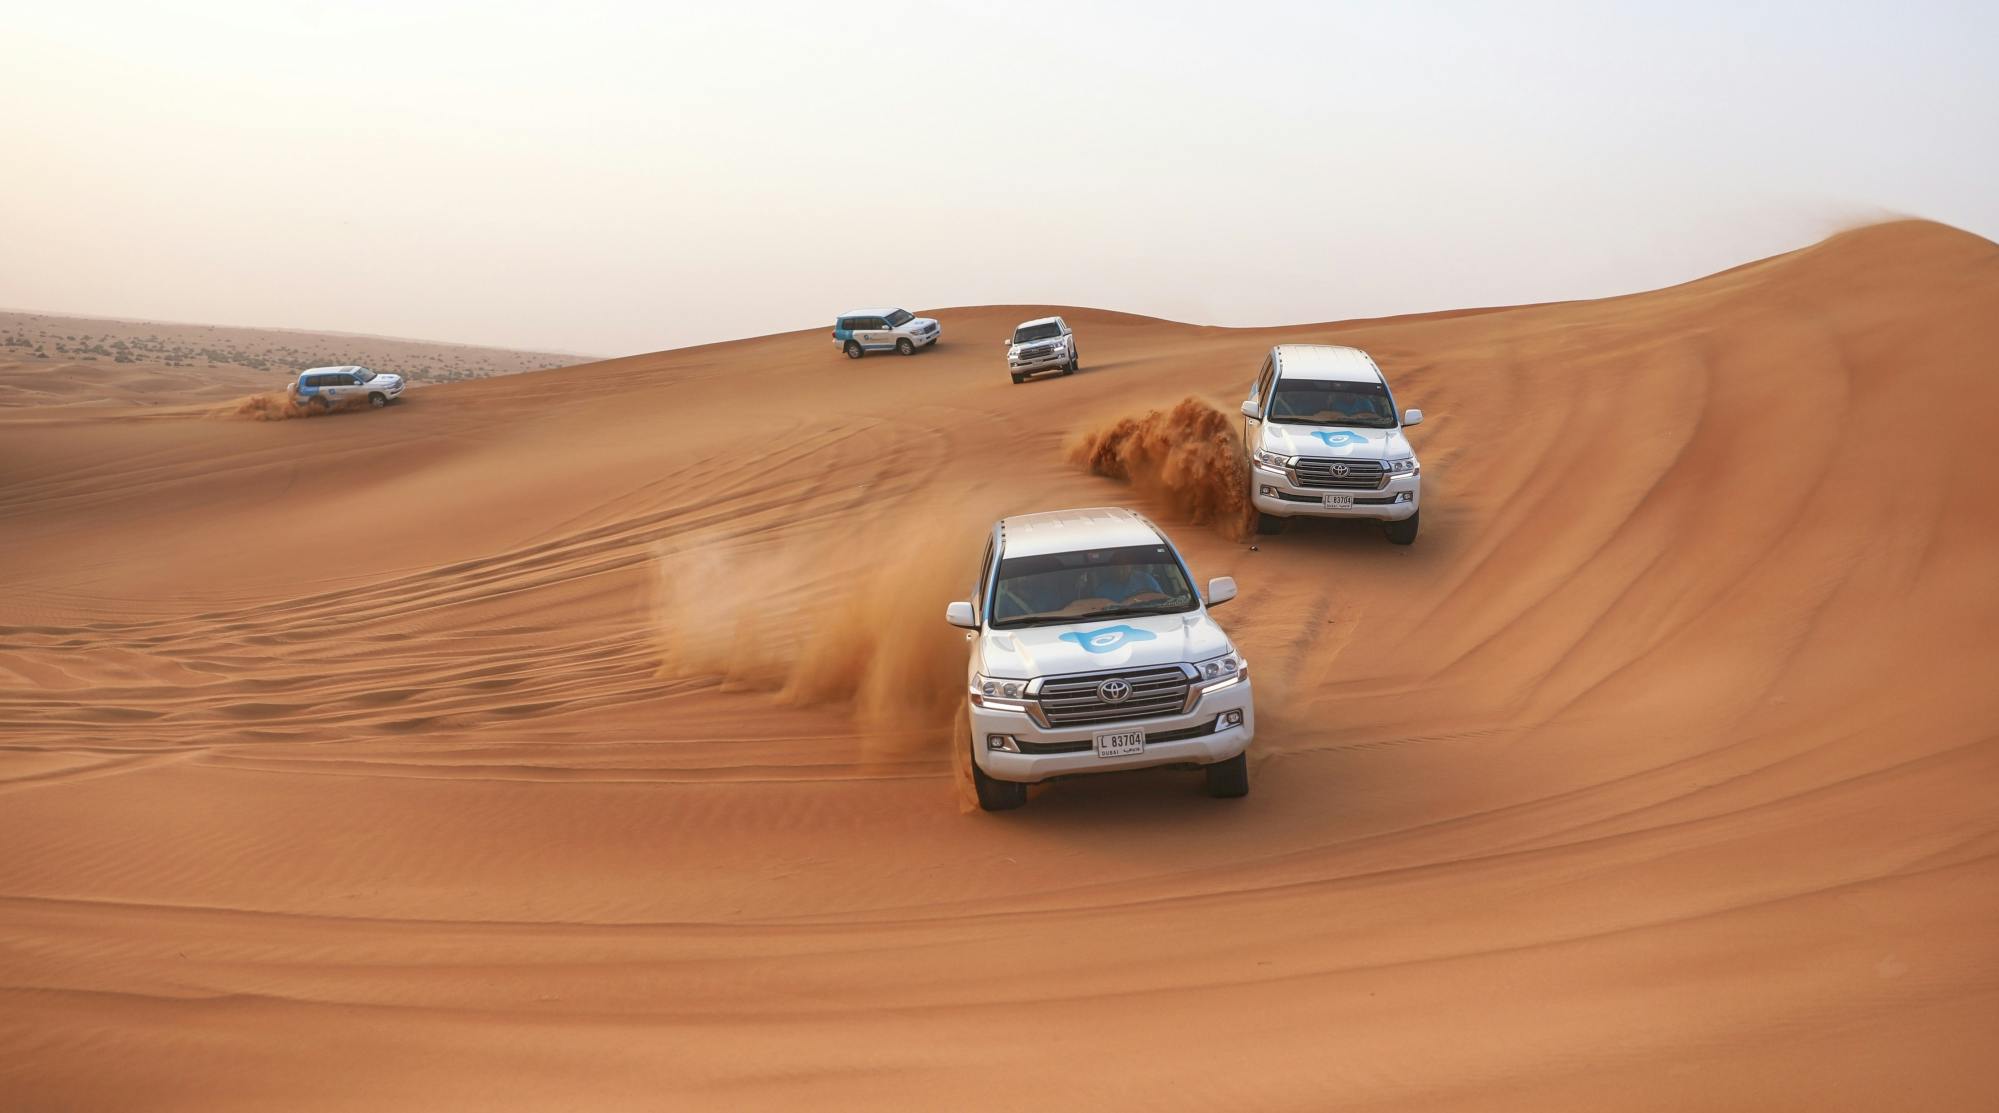 Safari matutino por el desierto de Dubái con recorrido por las dunas, sandboarding y paseo en camello